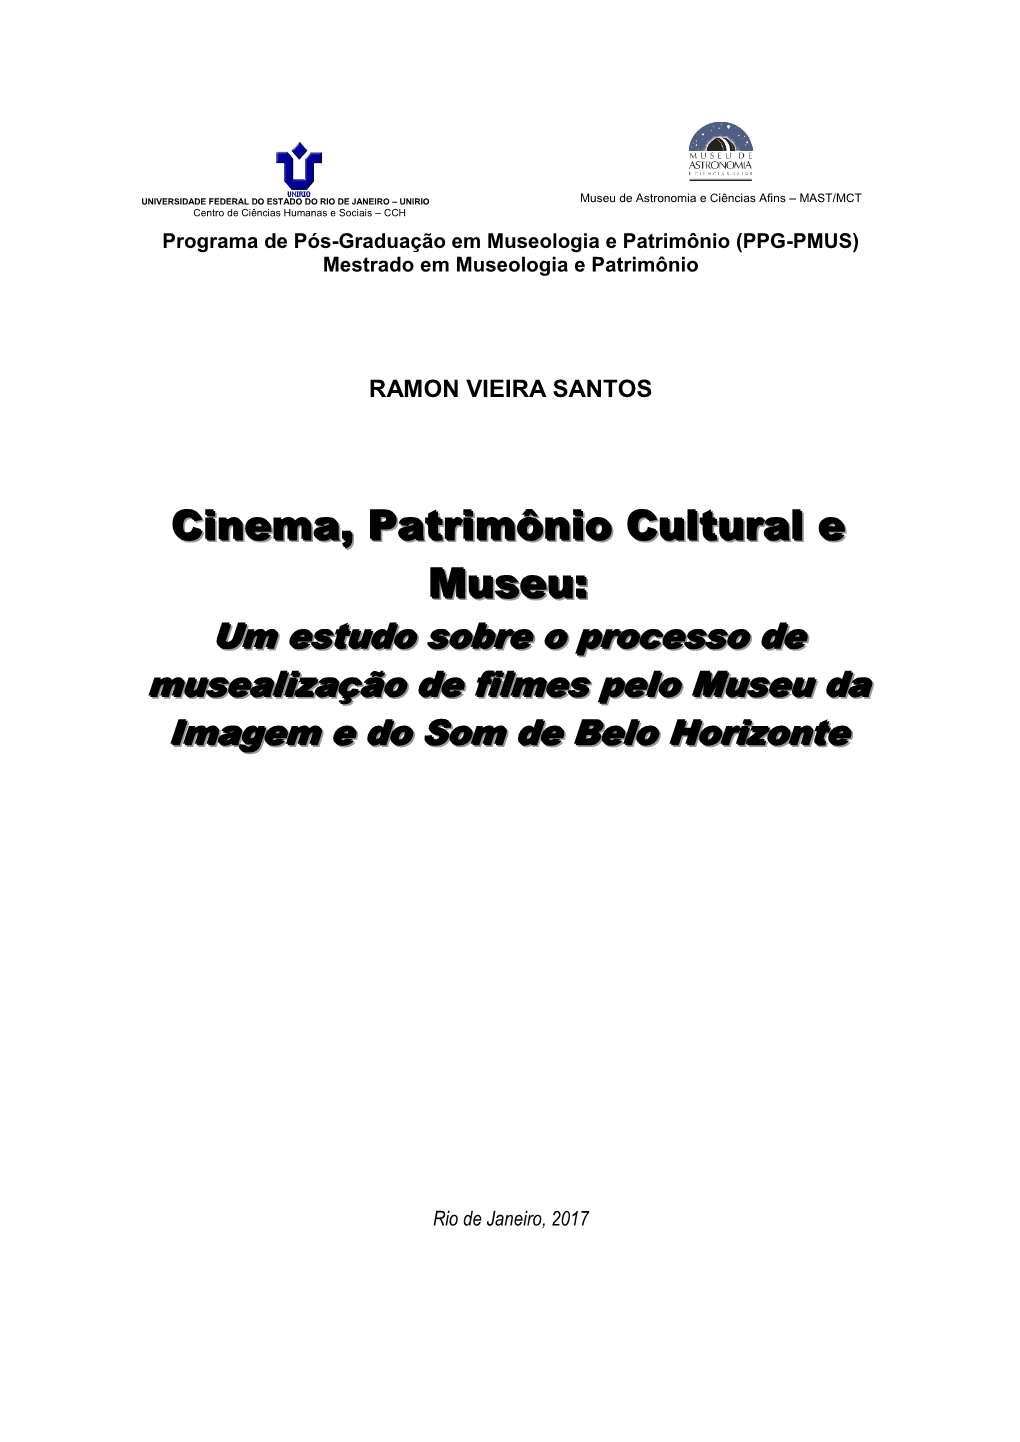 Cinema, Patrimônio Cultural E Museu: Um Estudo Sobre O Processo De Musealização De Filmes Pelo Museu Da Imagem E Do Som De Belo Horizonte